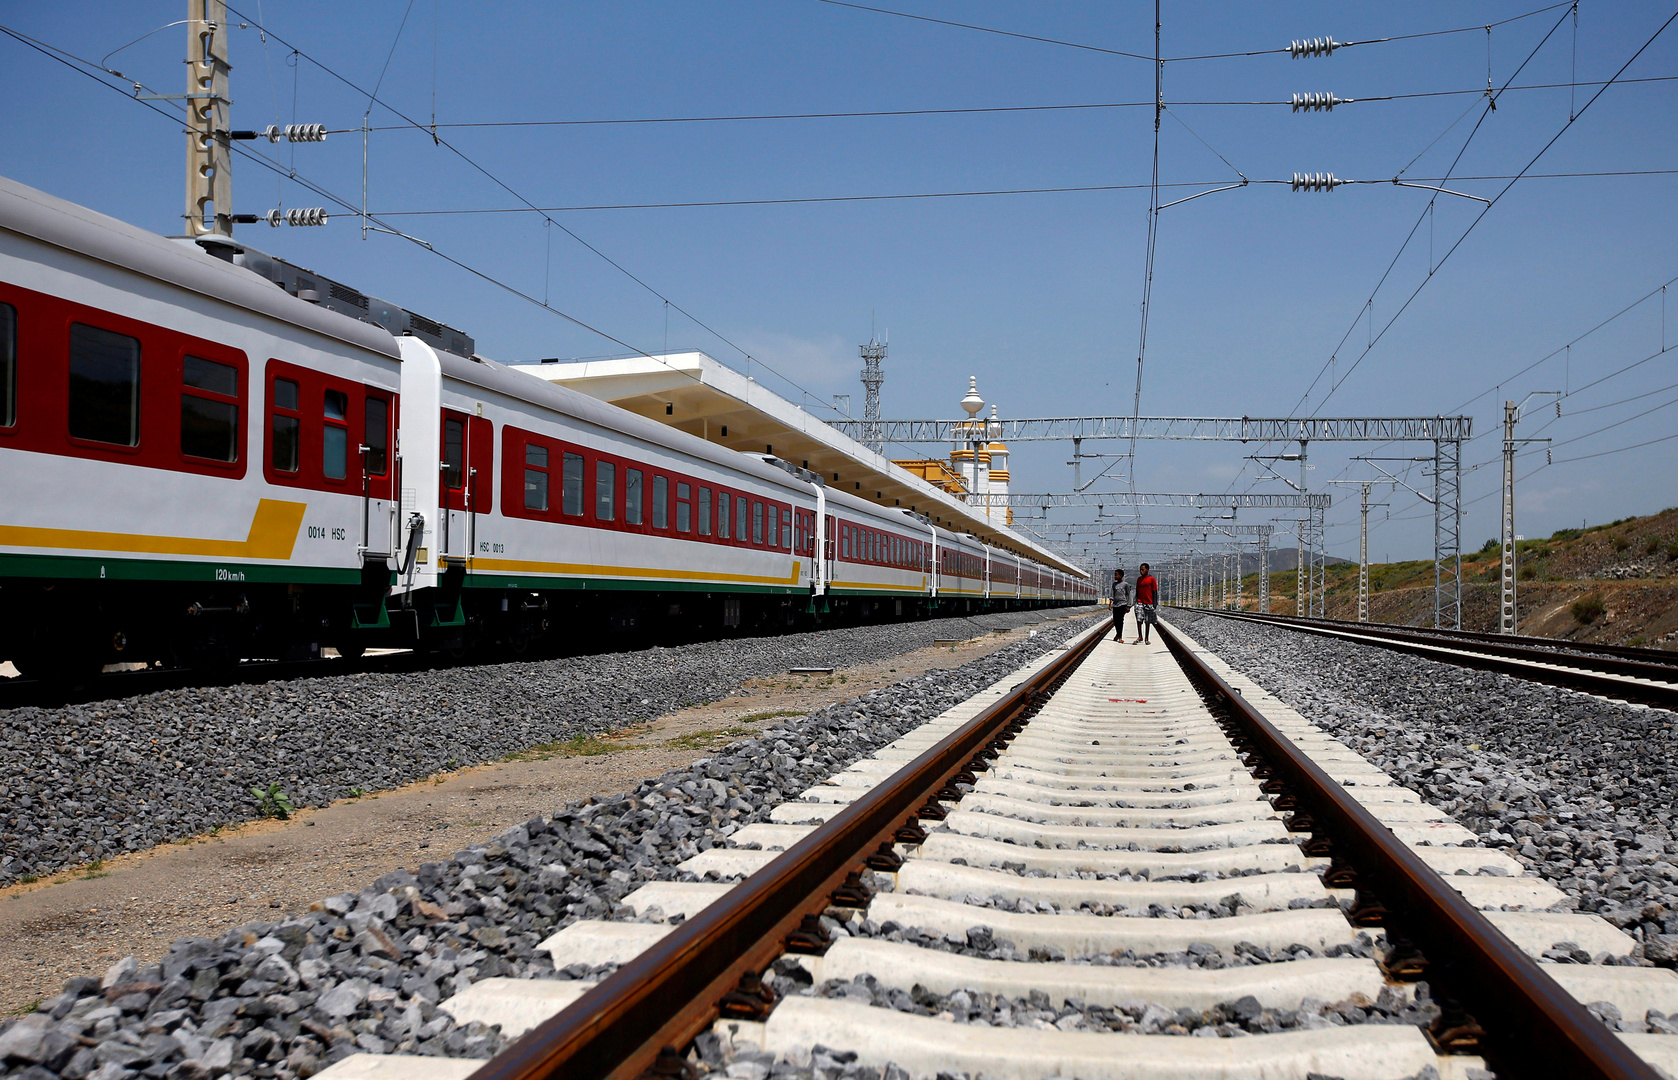 مسؤول إثيوبي يؤكد قطع طريق حيوي وطريق تجاري للسكك الحديدية يربط إثيوبيا بدولة عربية